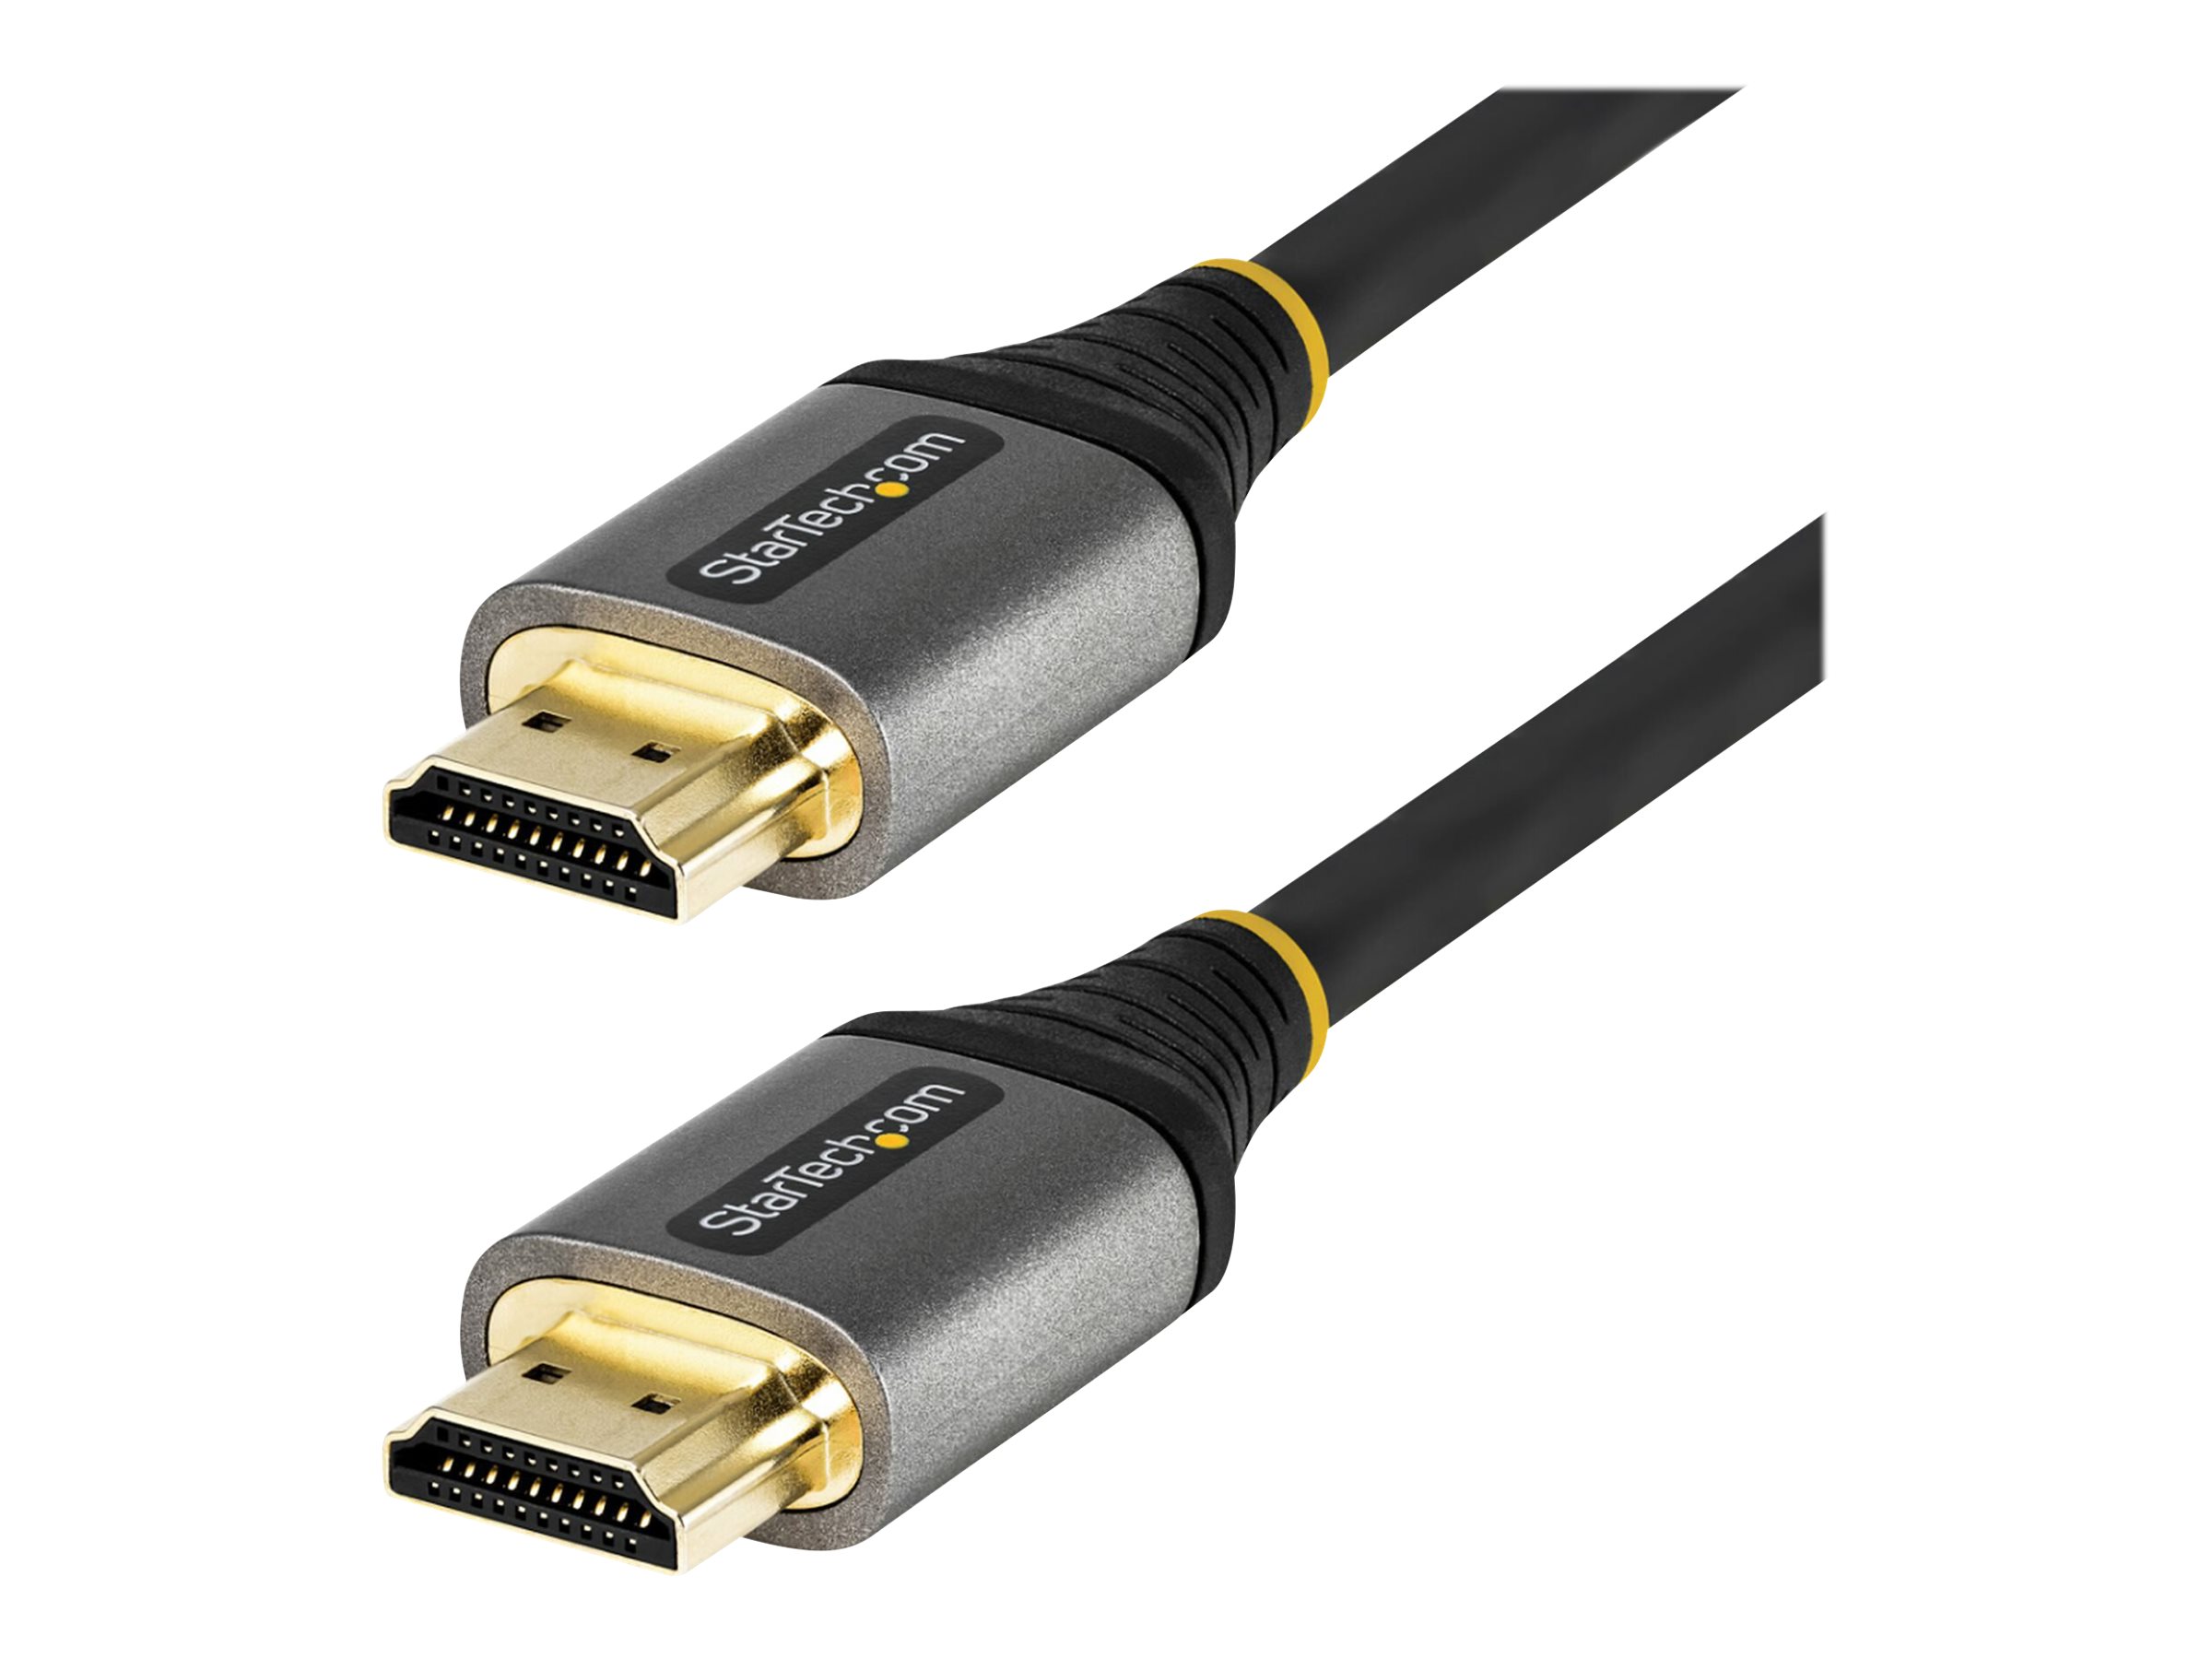 StarTech.com 2m Premium zertifiziertes HDMI 2.0 Kabel - High Speed Ultra HD 4K 60Hz HDMI Kabel mit Ethernet - HDR10, ARC - UHD HDMI Videokabel - Für UHD Monitore, TVs, Displays - M/M (HDMMV2M)